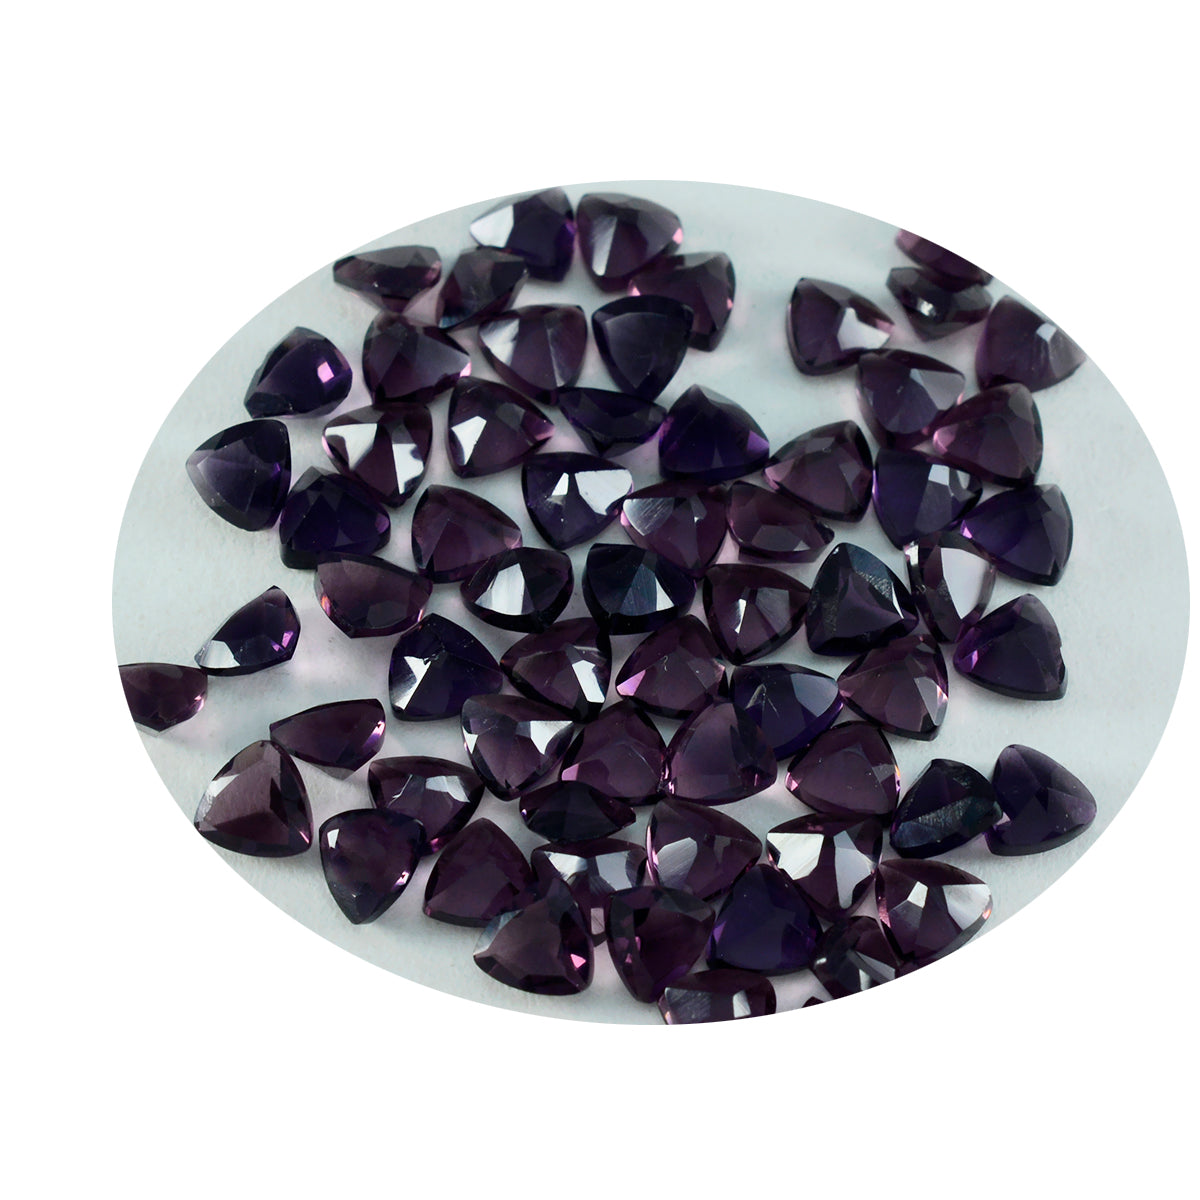 riyogems 1шт фиолетовый аметист cz граненый 5x5 мм форма триллион качество A1 свободный драгоценный камень